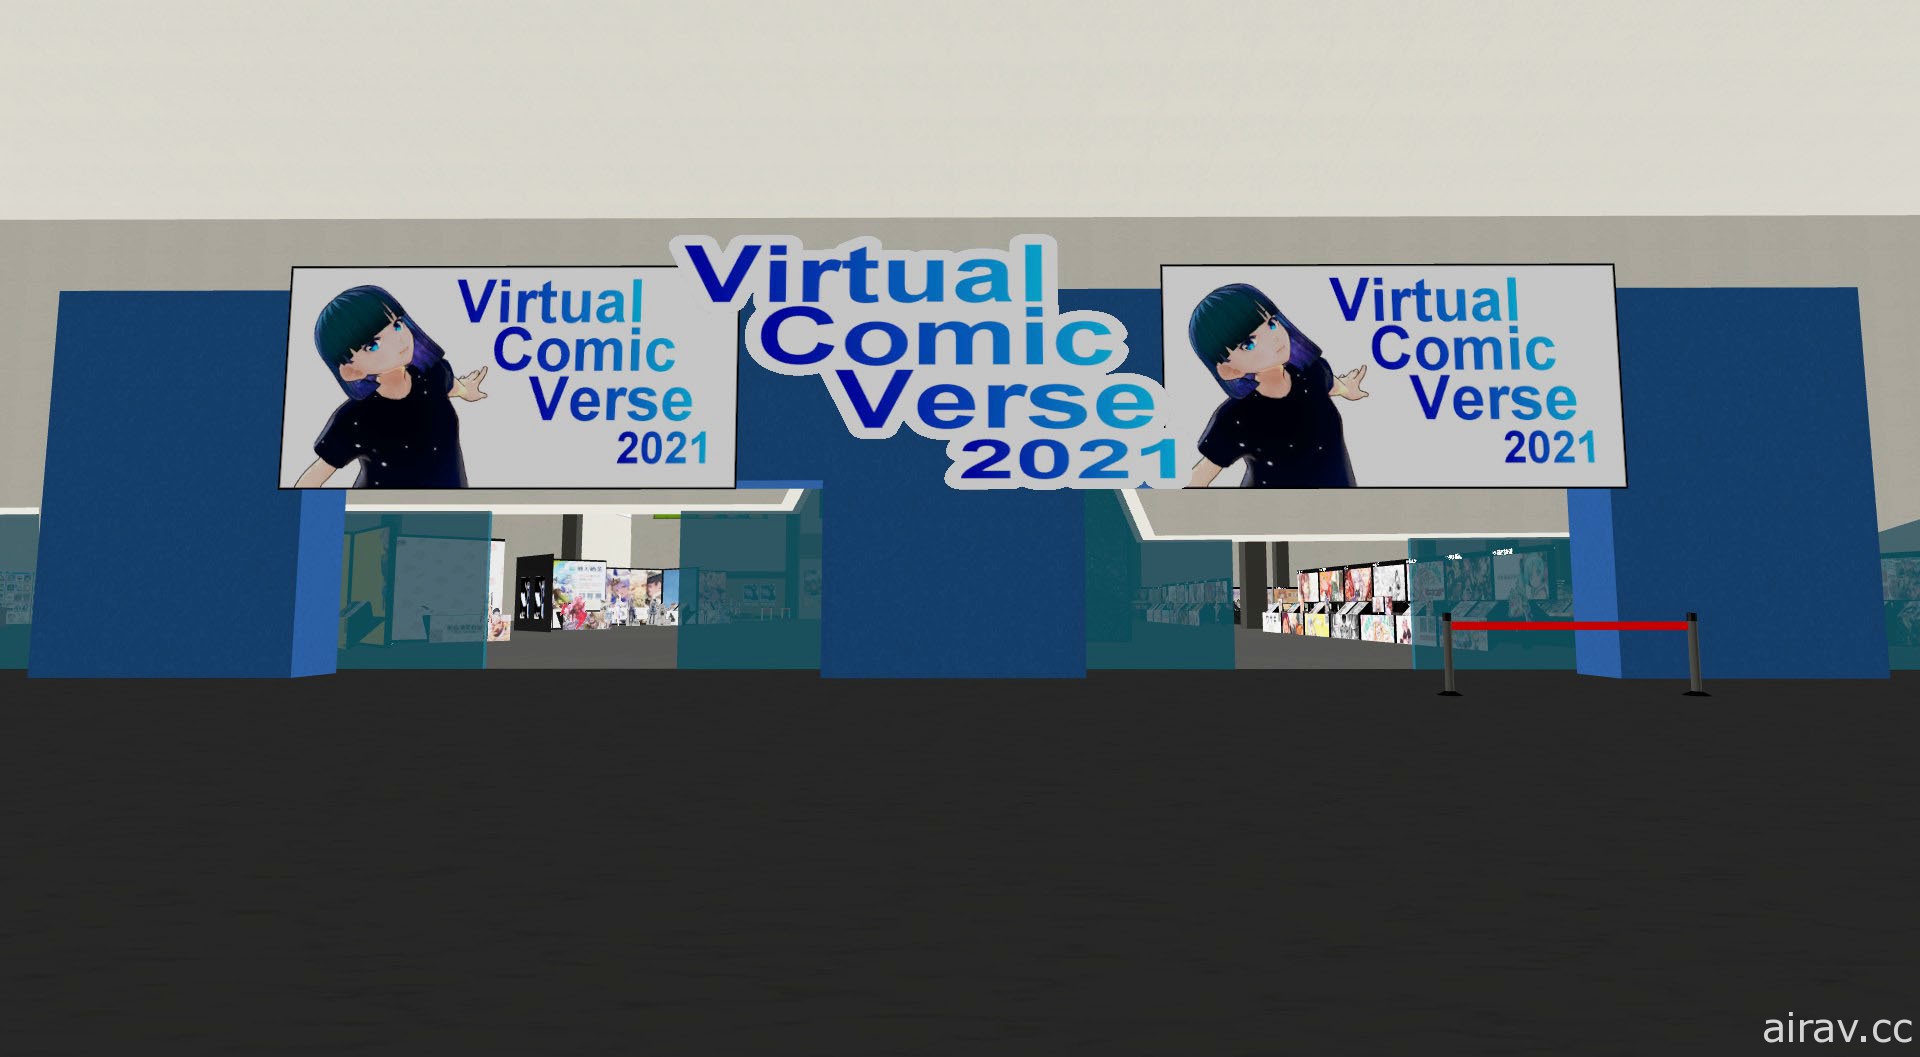 线上虚拟同人展会“VirtualComicVerse”即将展开 官方公布活动详情